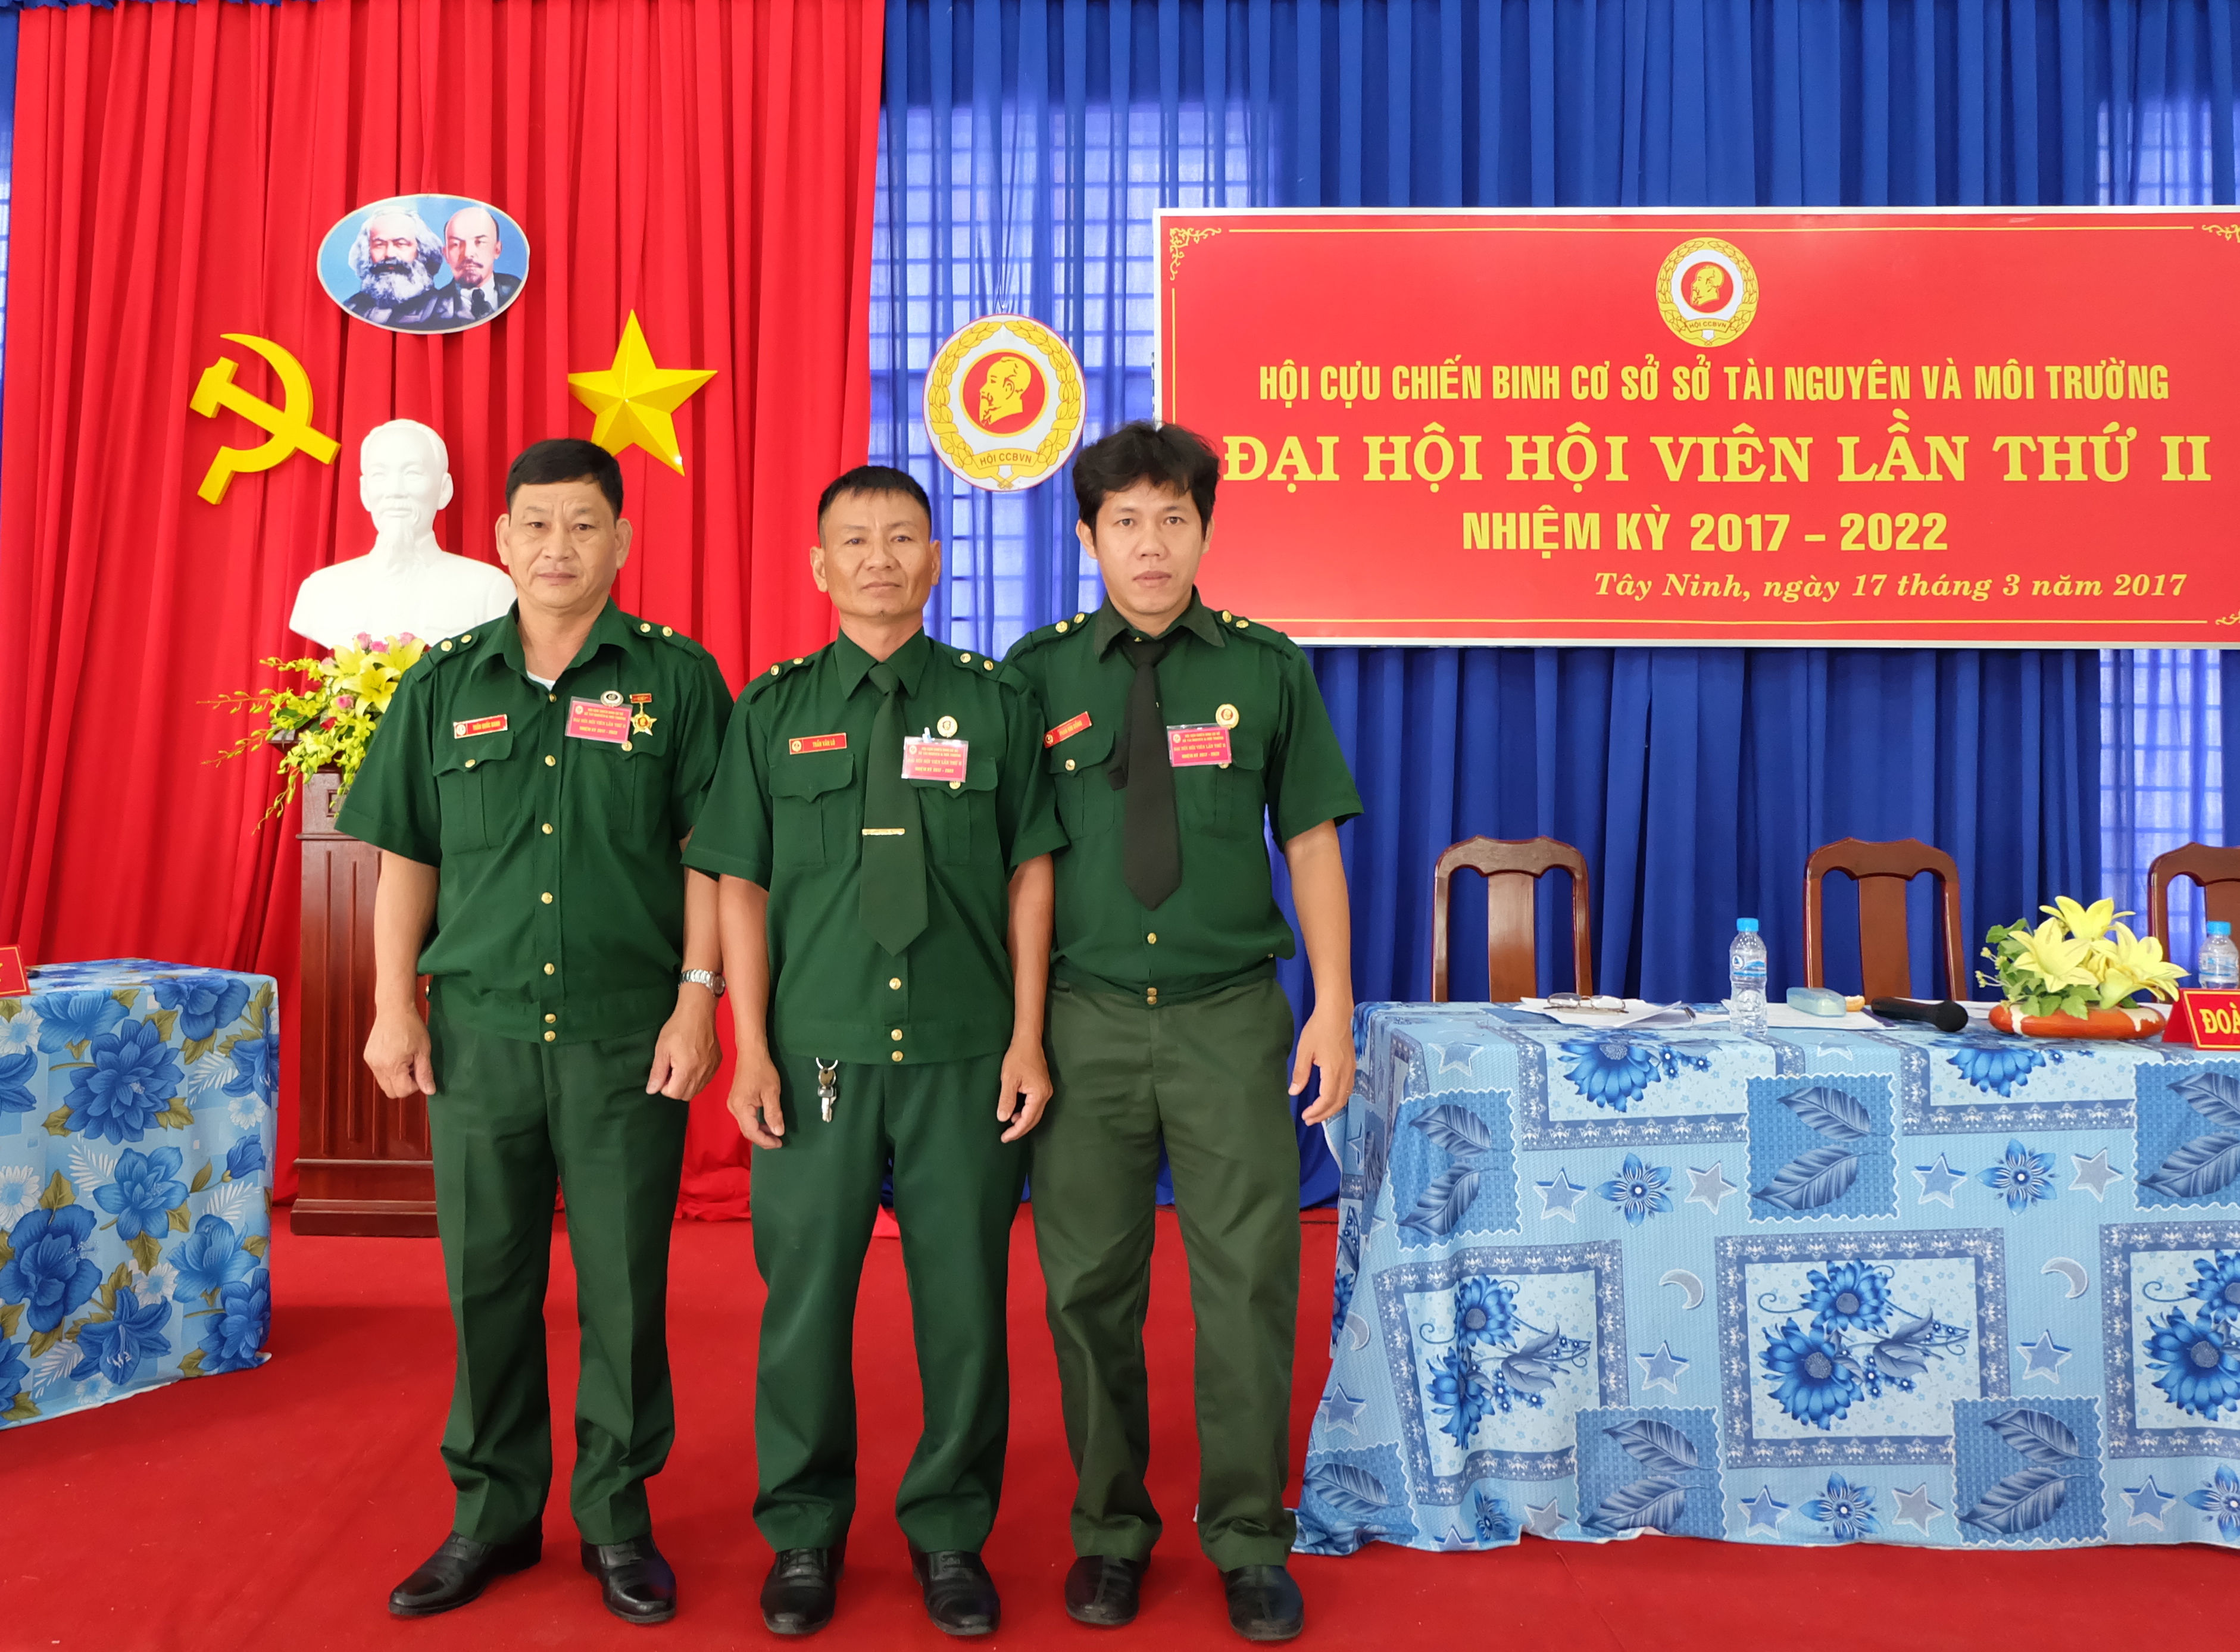 Đại hội Hội Cựu chiến binh cơ sở Sở Tài nguyên và Môi trường lần thứ II nhiệm kỳ 2017 – 2022